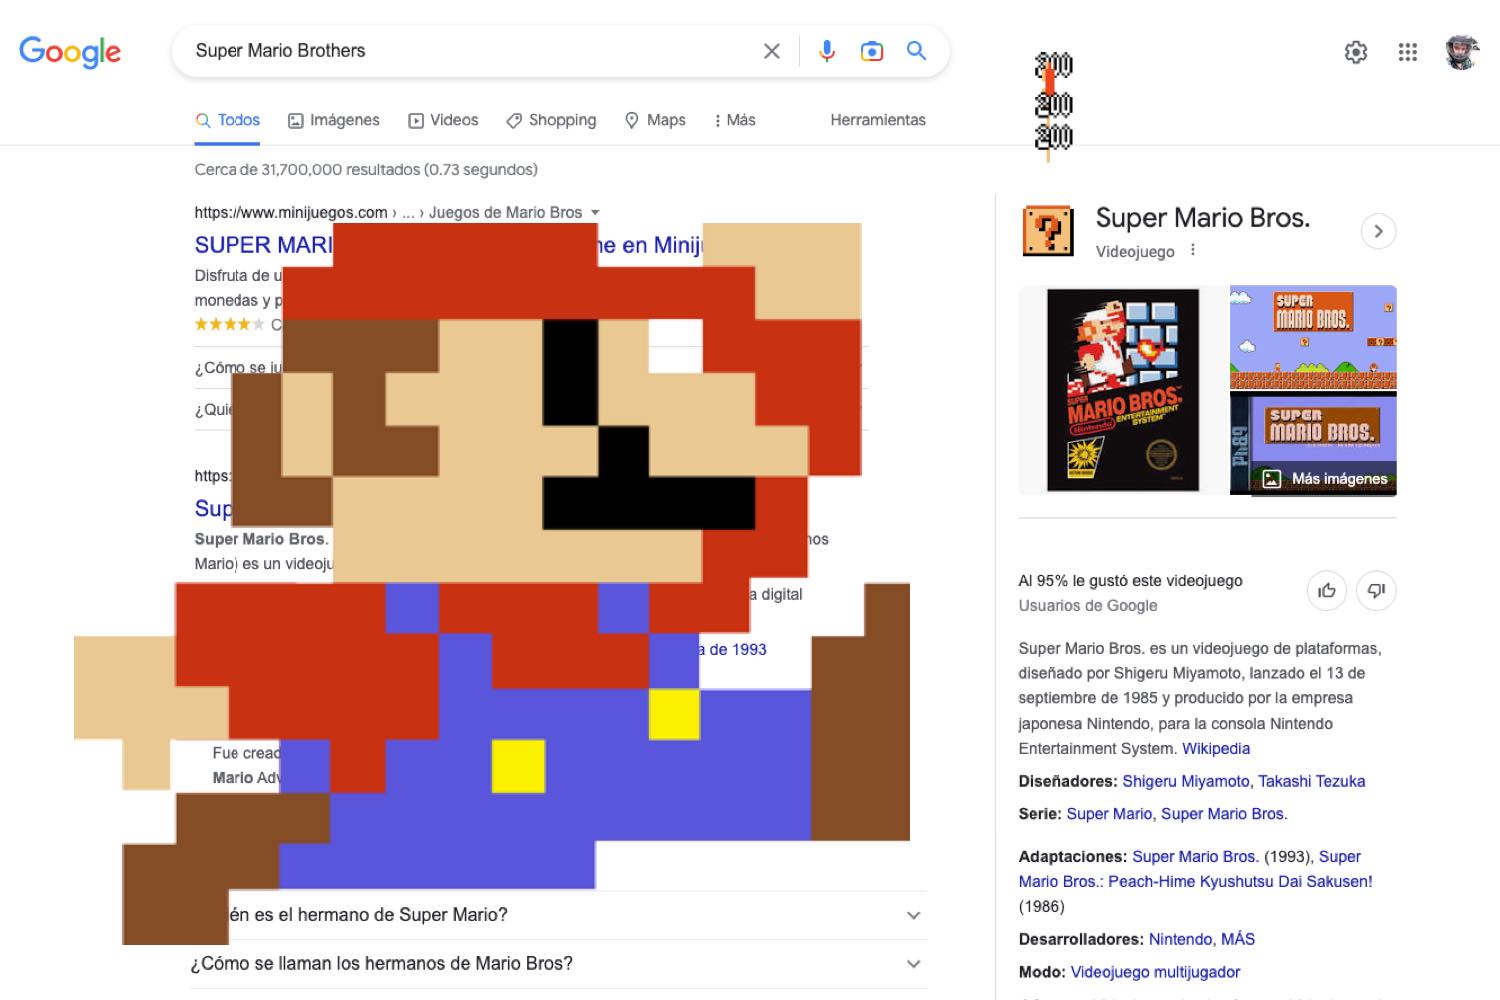 Google celebra Halloween com easter eggs e doodle animado